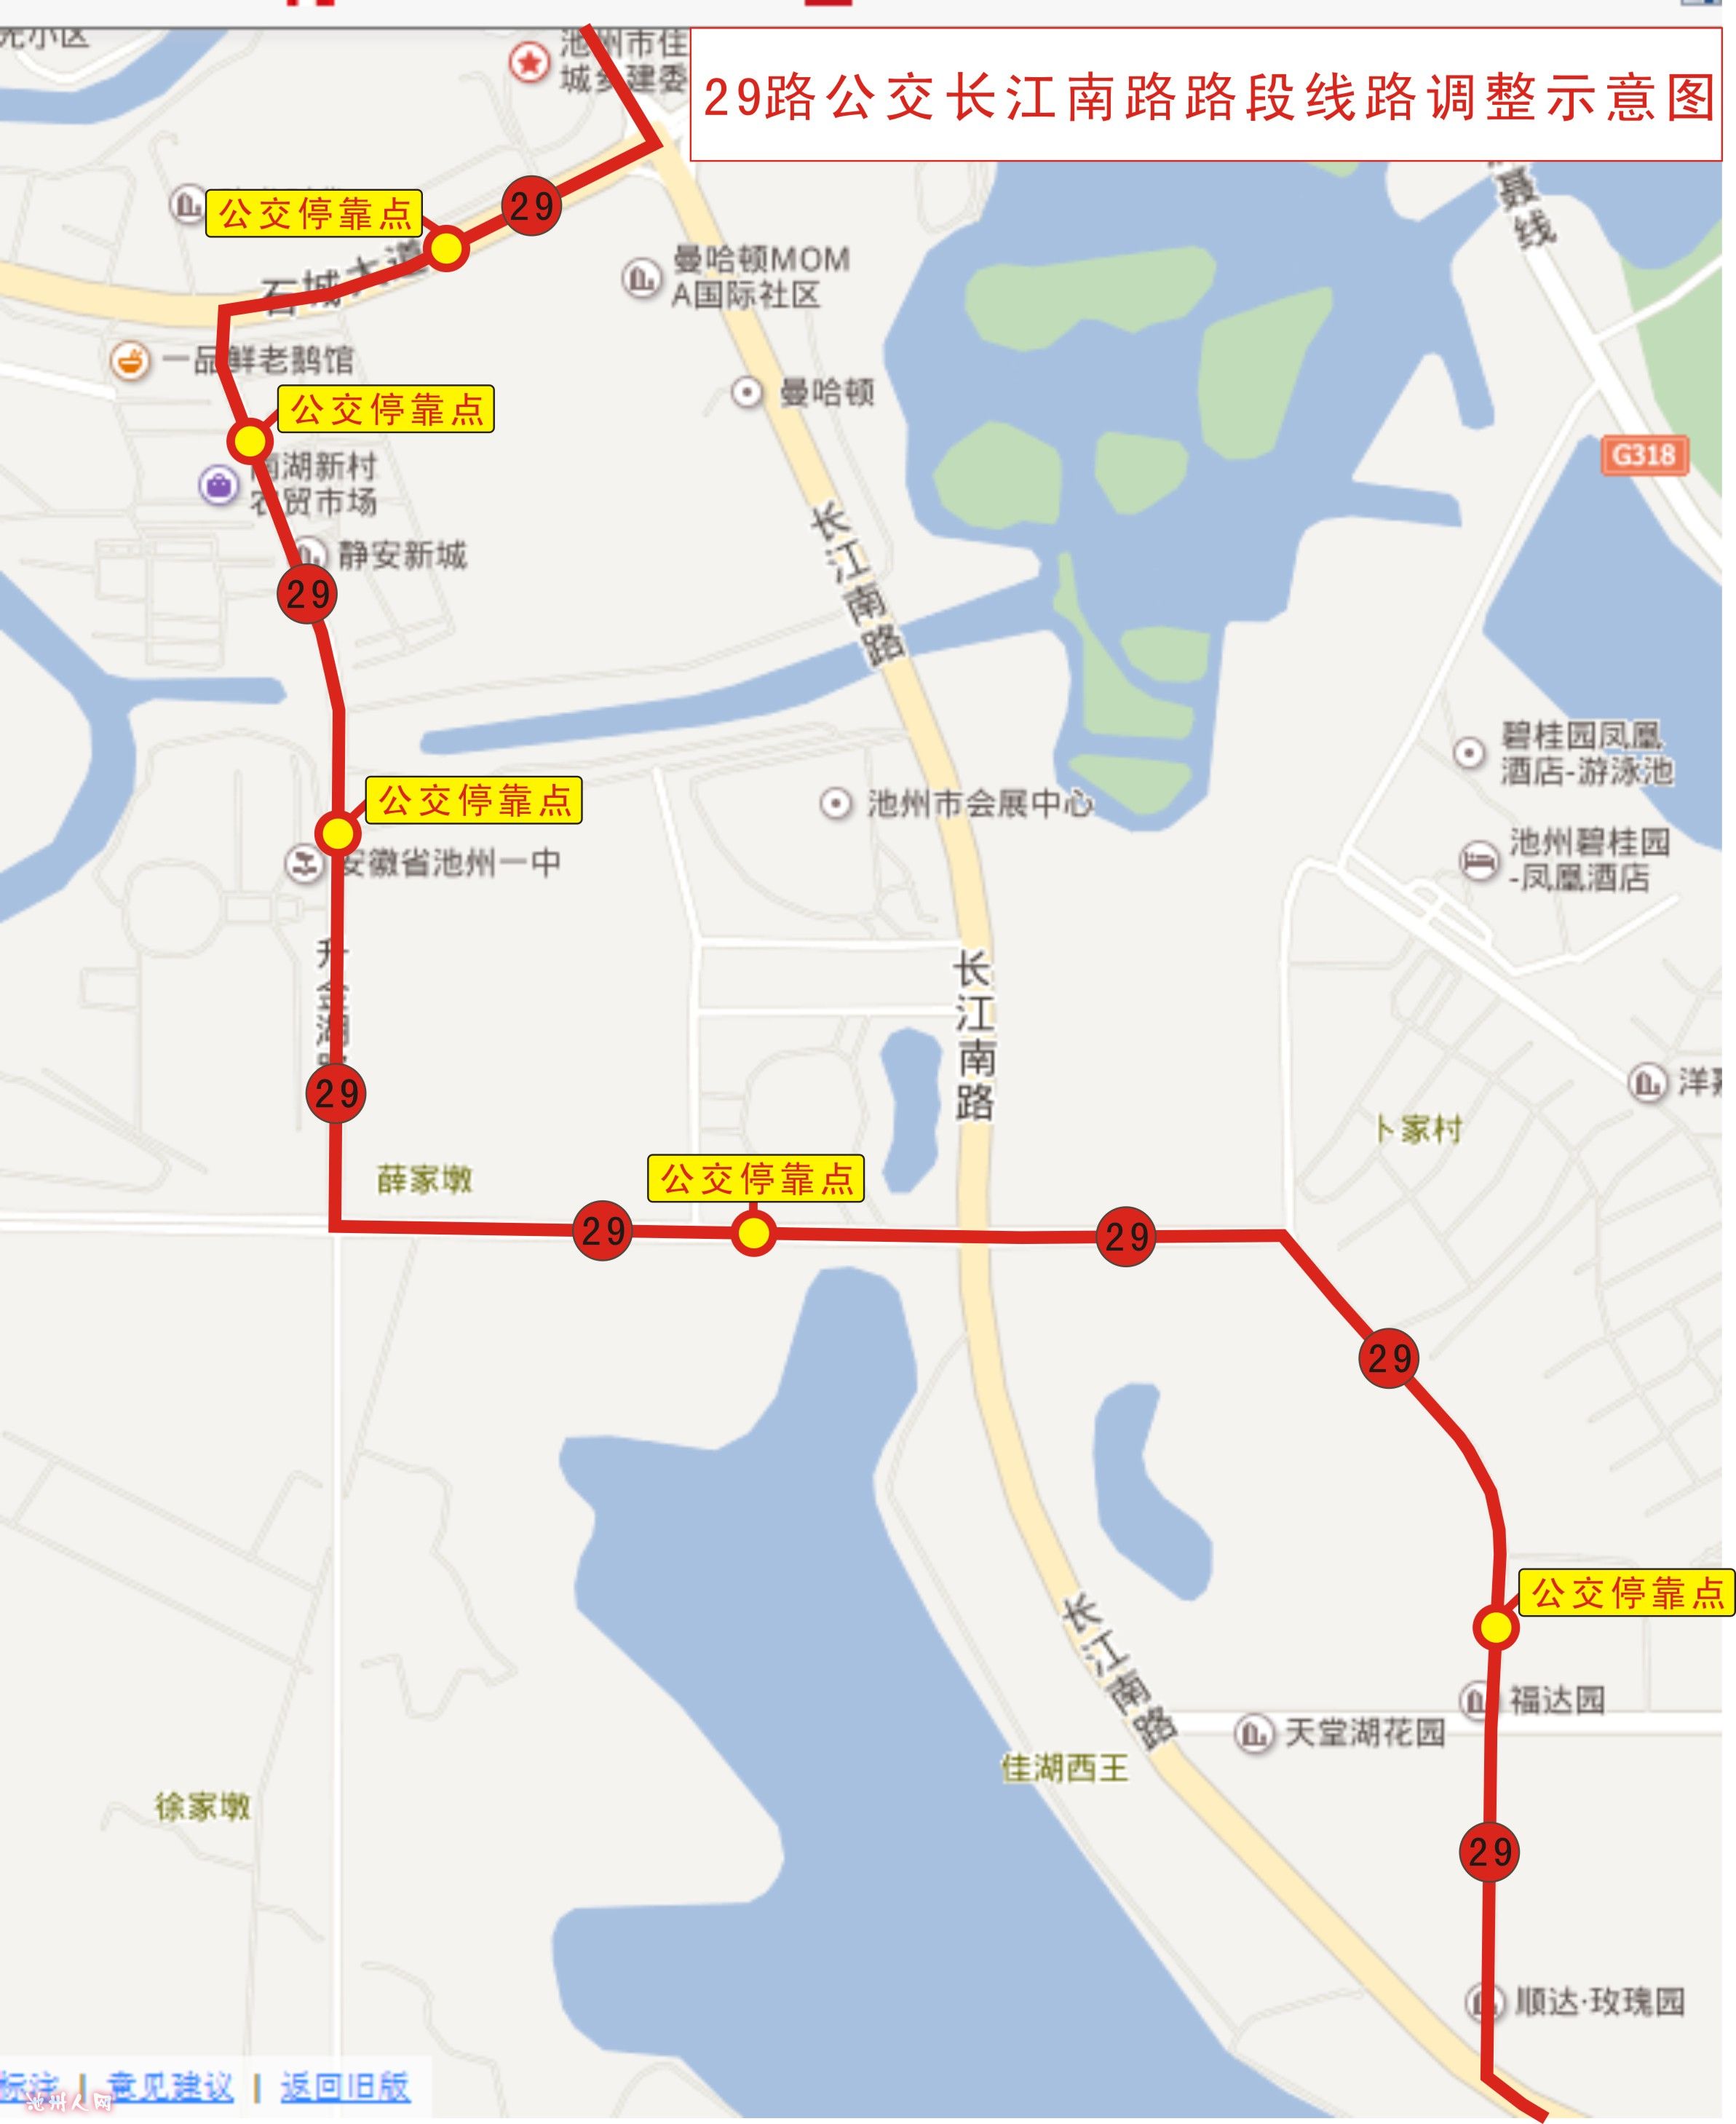 安庆29路公交车路线图图片